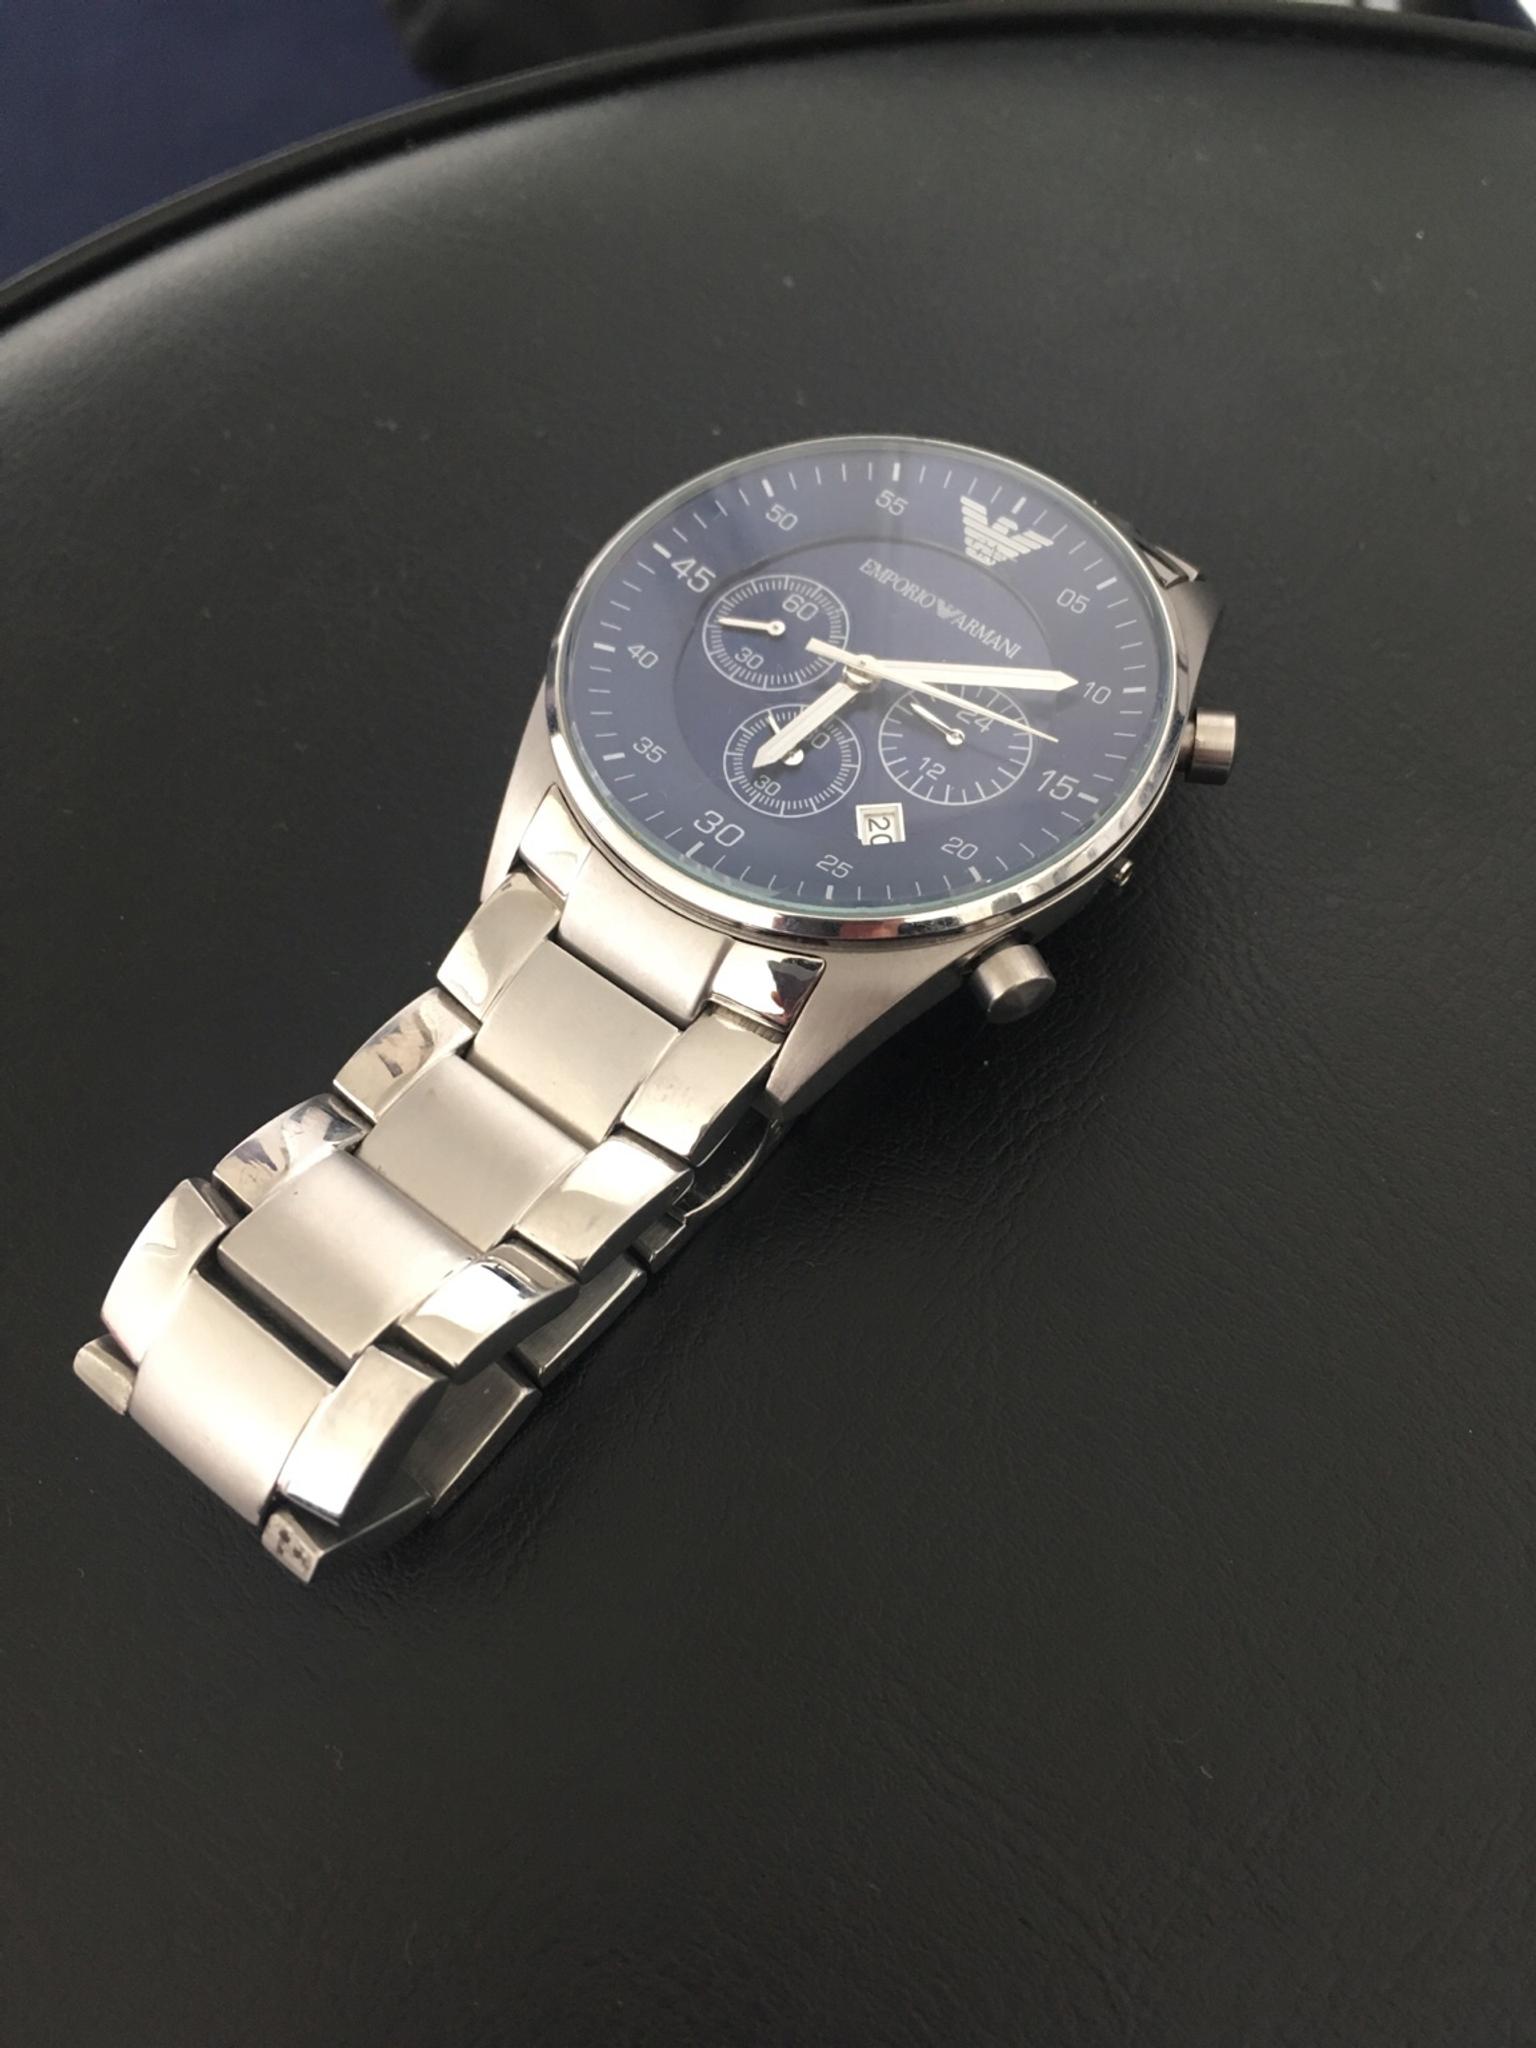 emporio armani watch ar5860 price